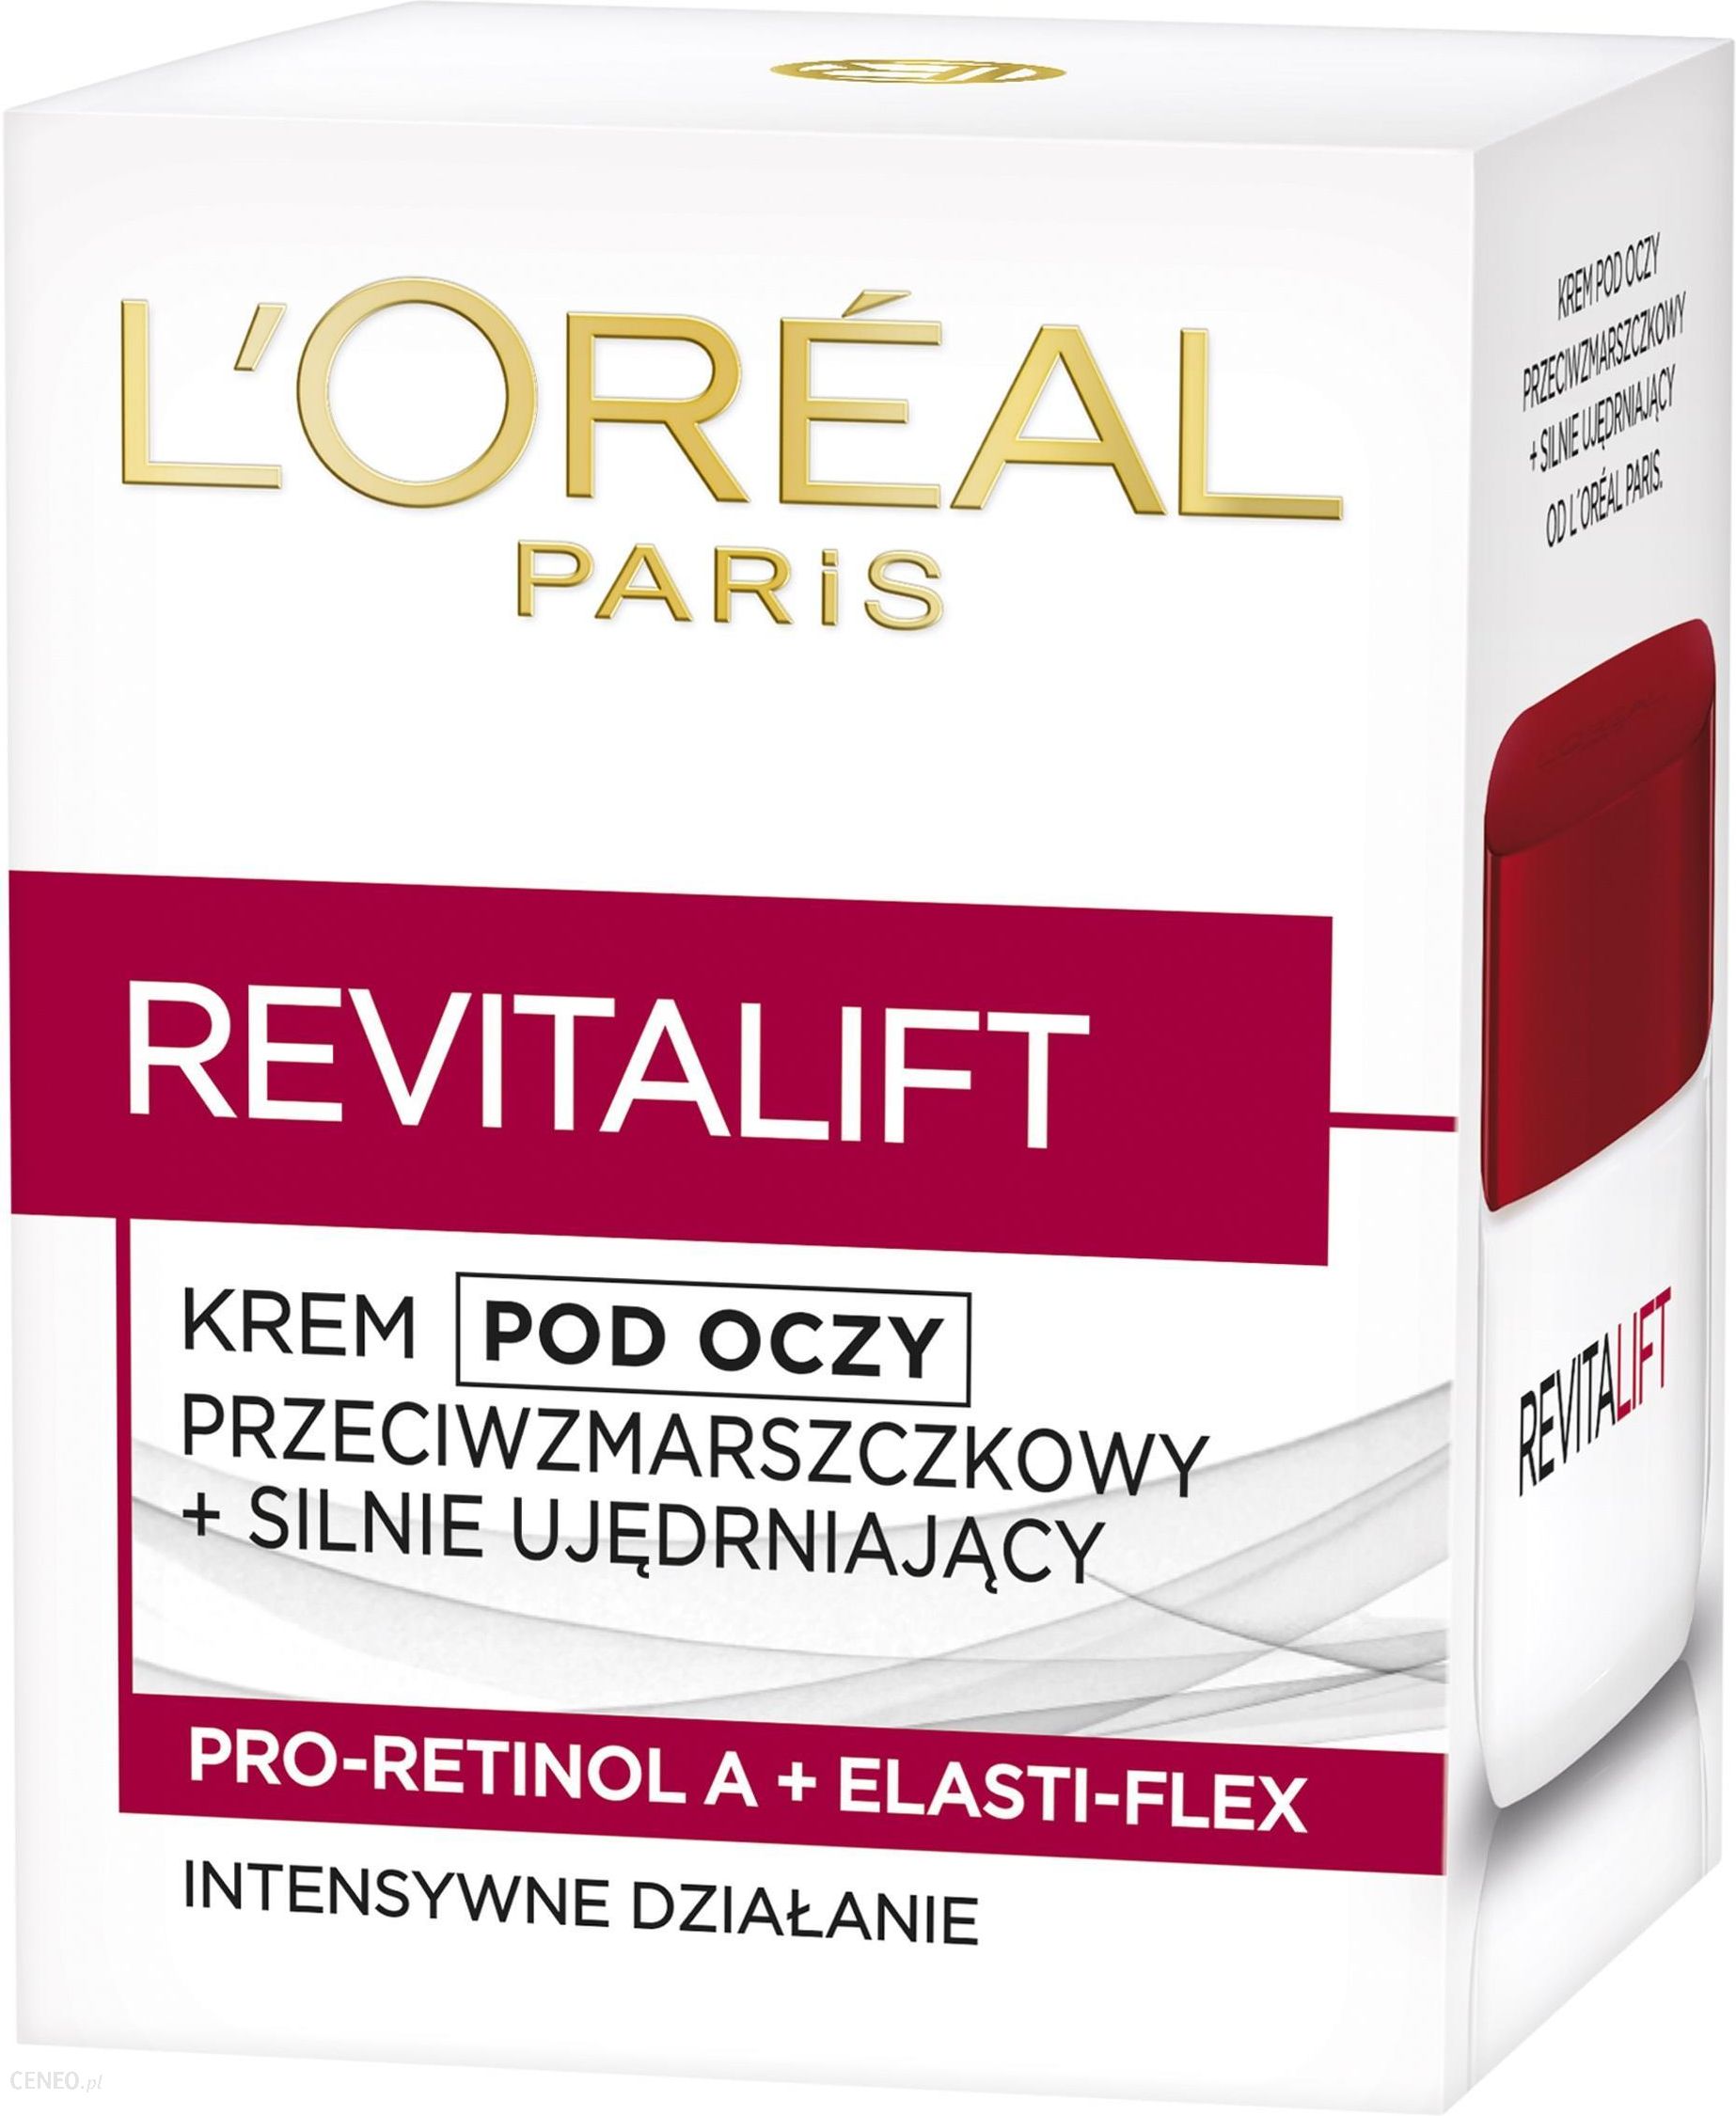 L'Oreal Paris Revitalift Krem przeciwzmarszczkowy i silnie ujędrniający pod oczy 15 ml